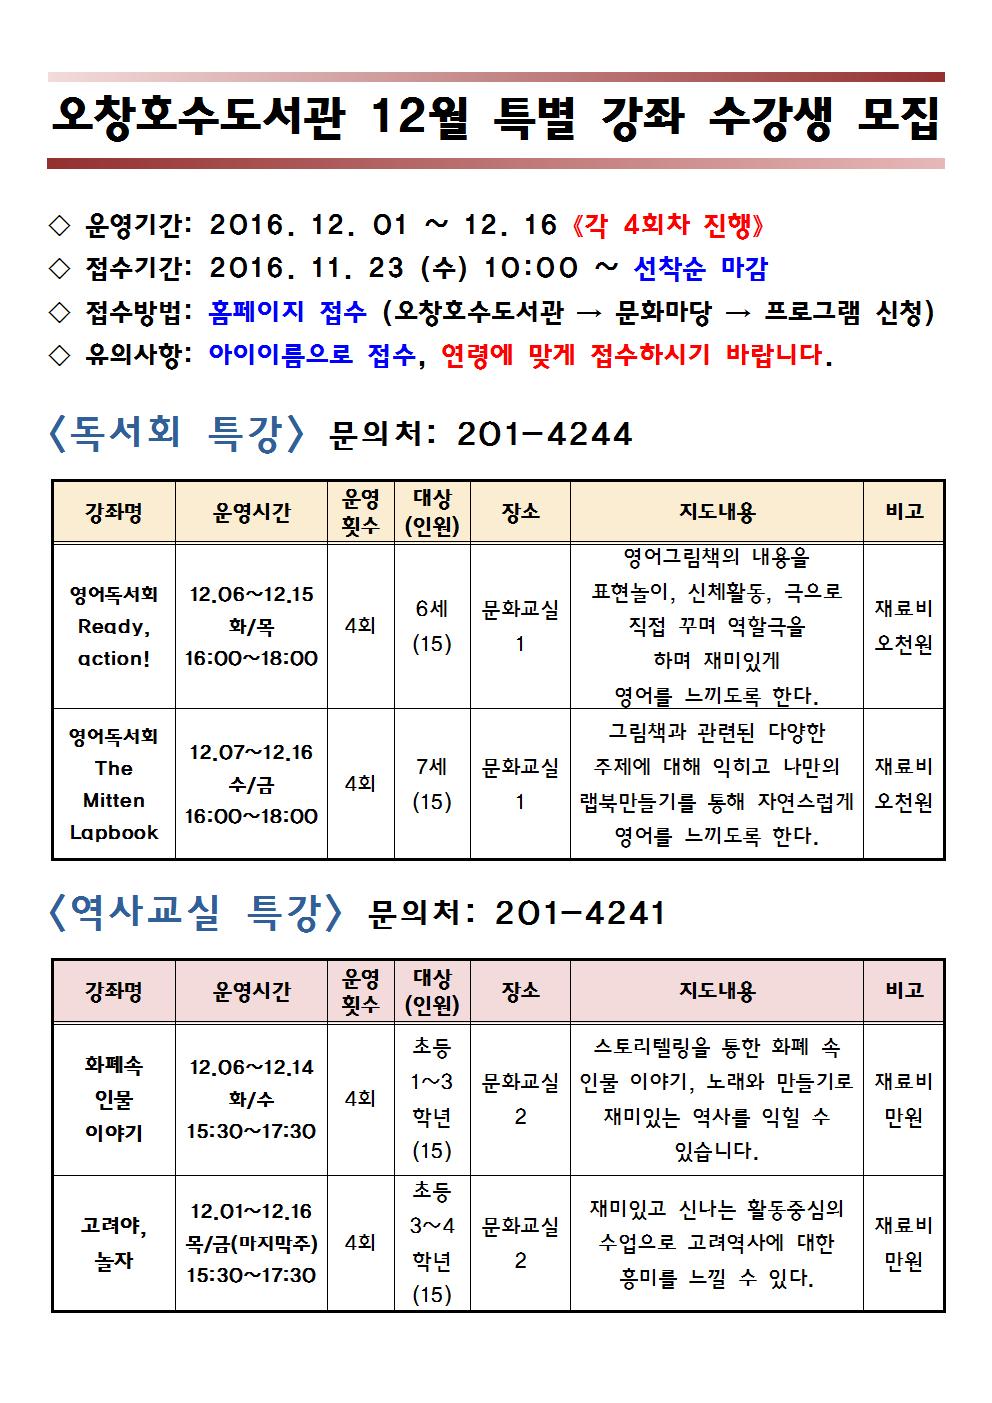 오창호수도서관 12월 특별 강좌 수강생 모집